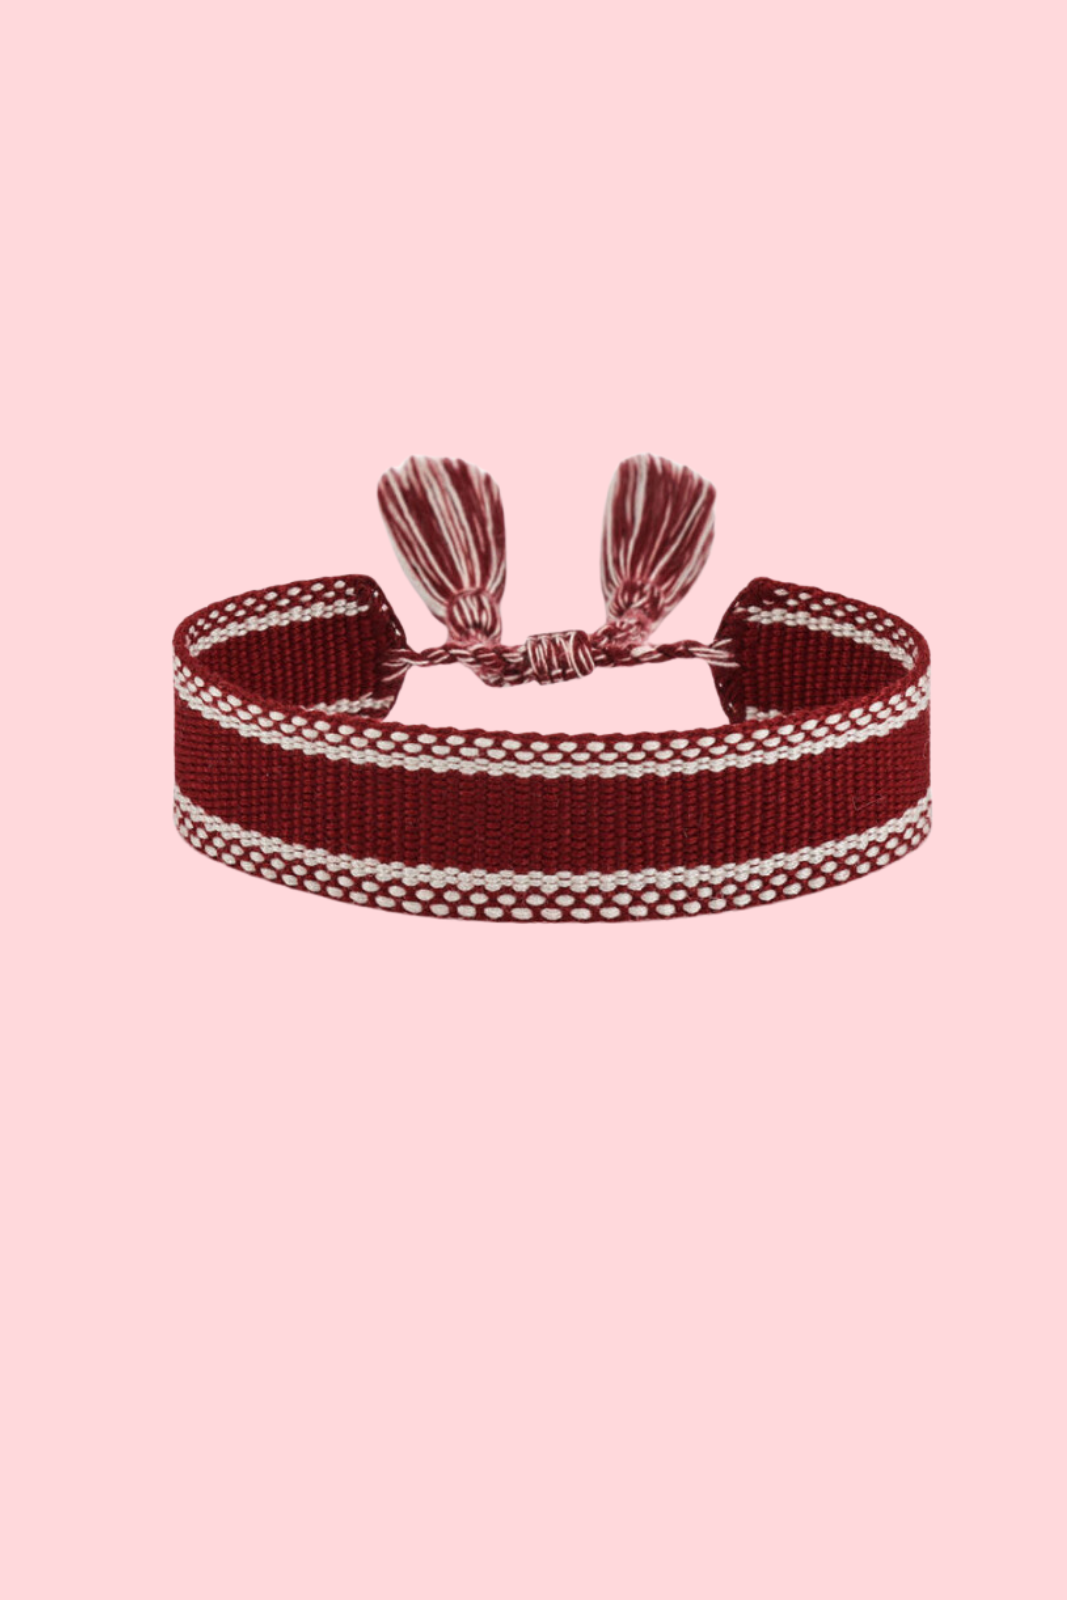 Embroidered Bracelet - Chi Omega